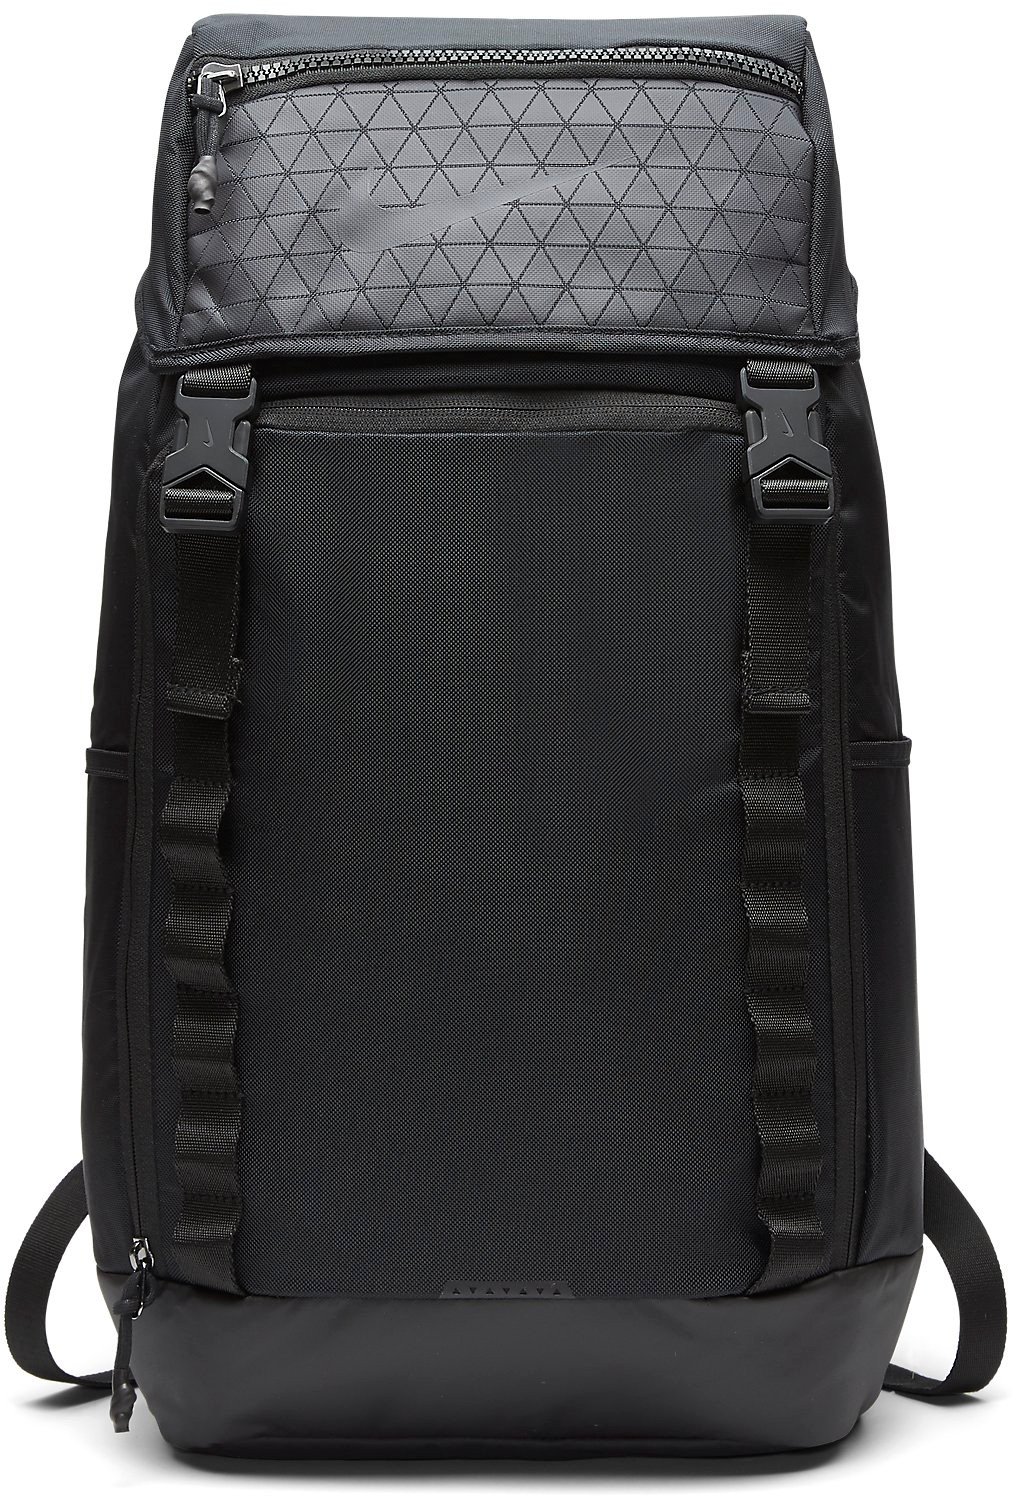 Backpack Nike NK VPR SPEED BKPK - 2.0 